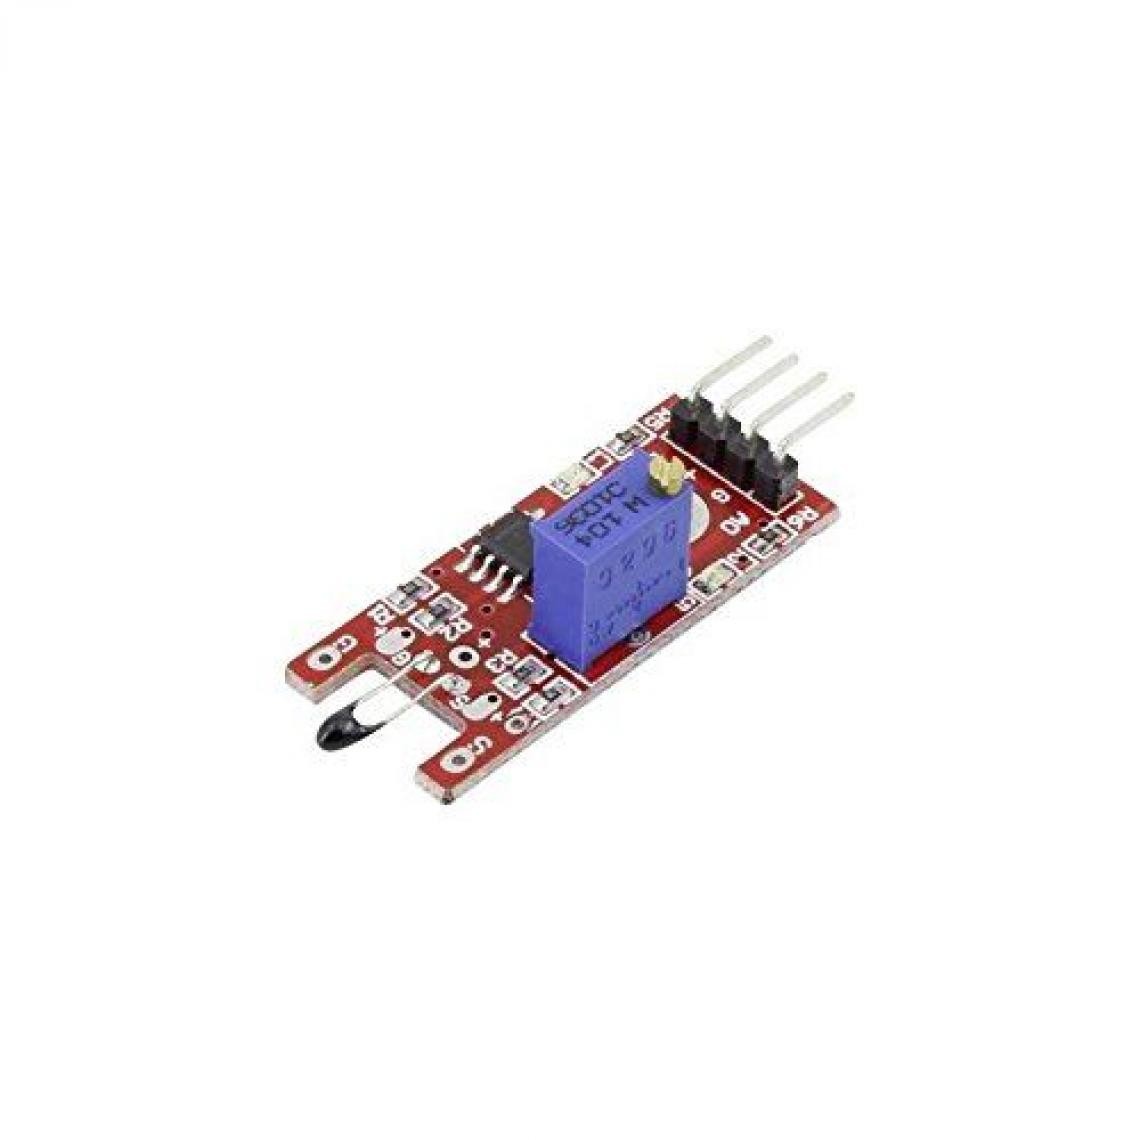 Inconnu - Module capteur de température Iduino 1485301 -55 à +125 °C 1 pc(s) - Autres équipements modulaires